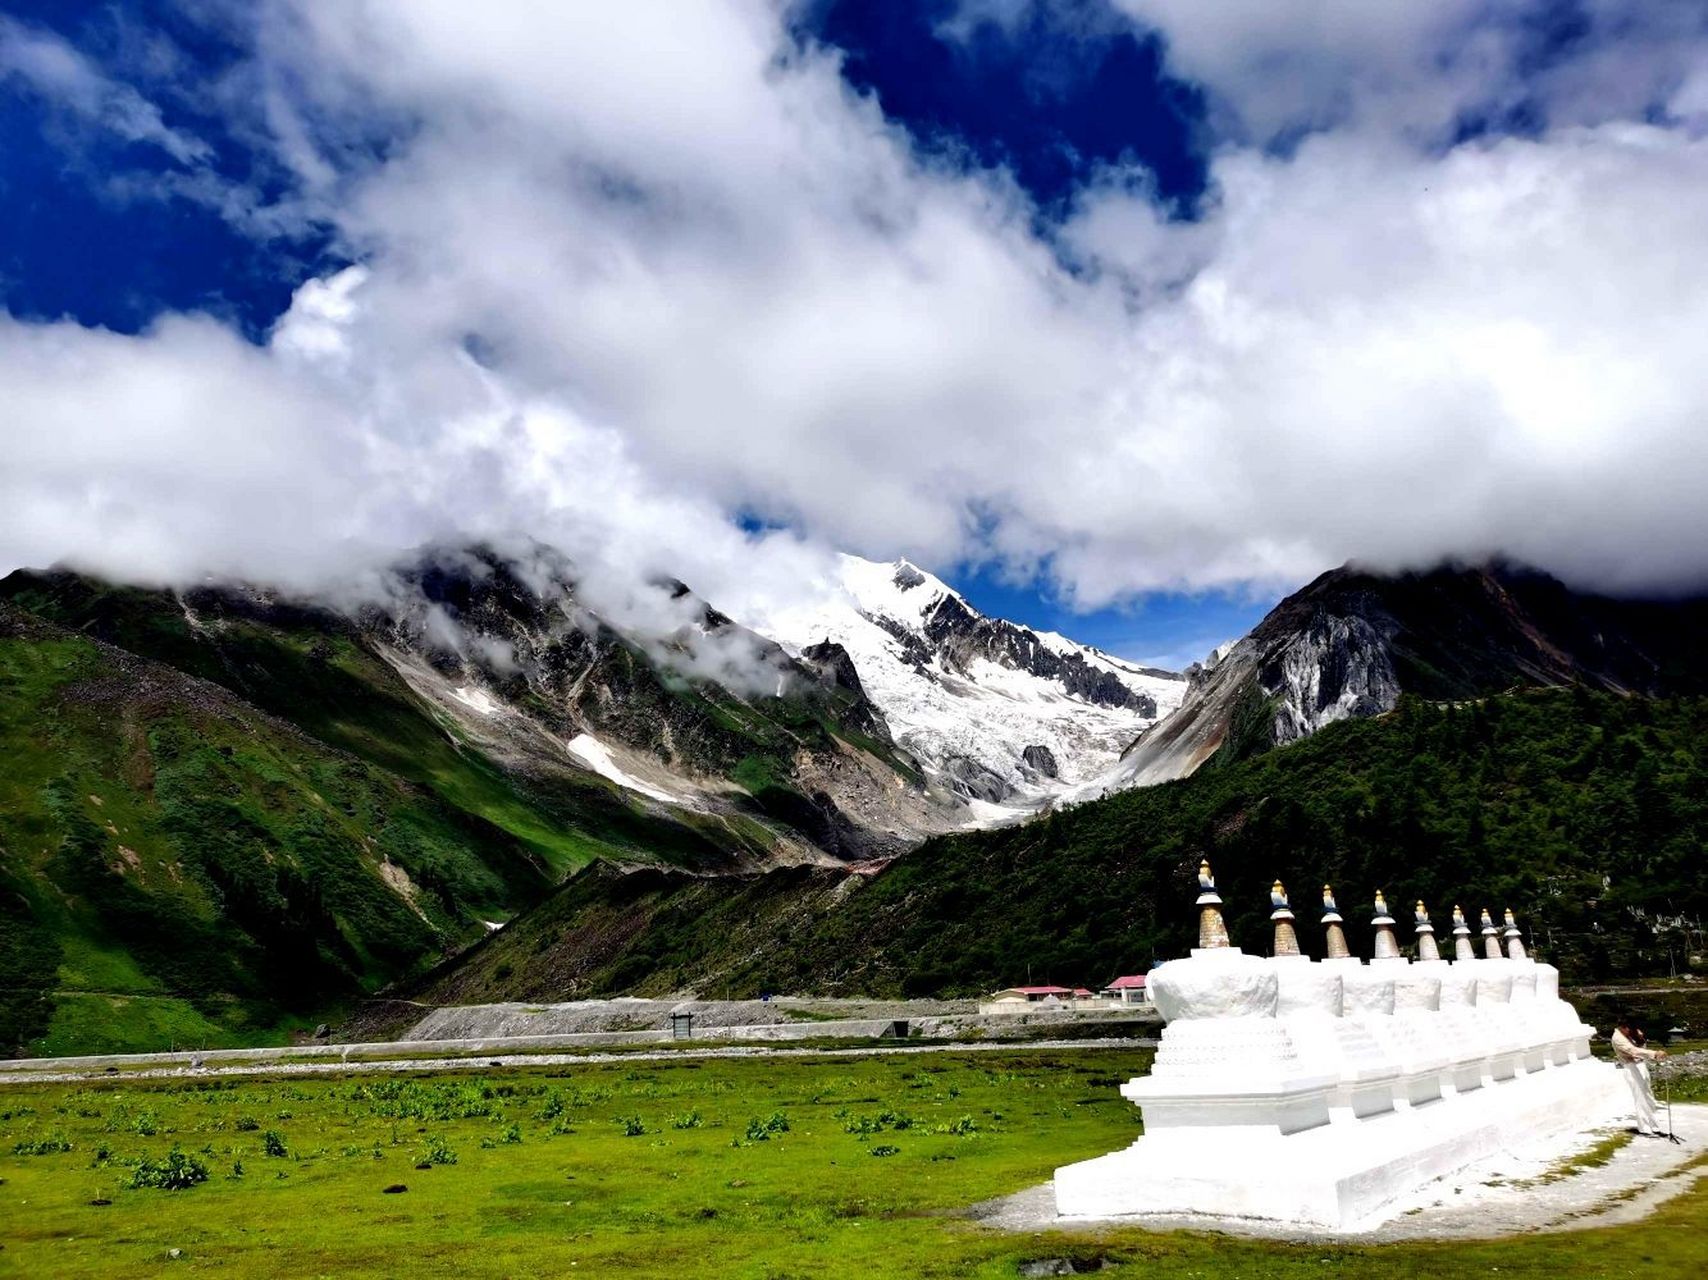 嘎隆拉雪山位于西藏林芝墨脱县与波密县交界处,被当地人称为神山